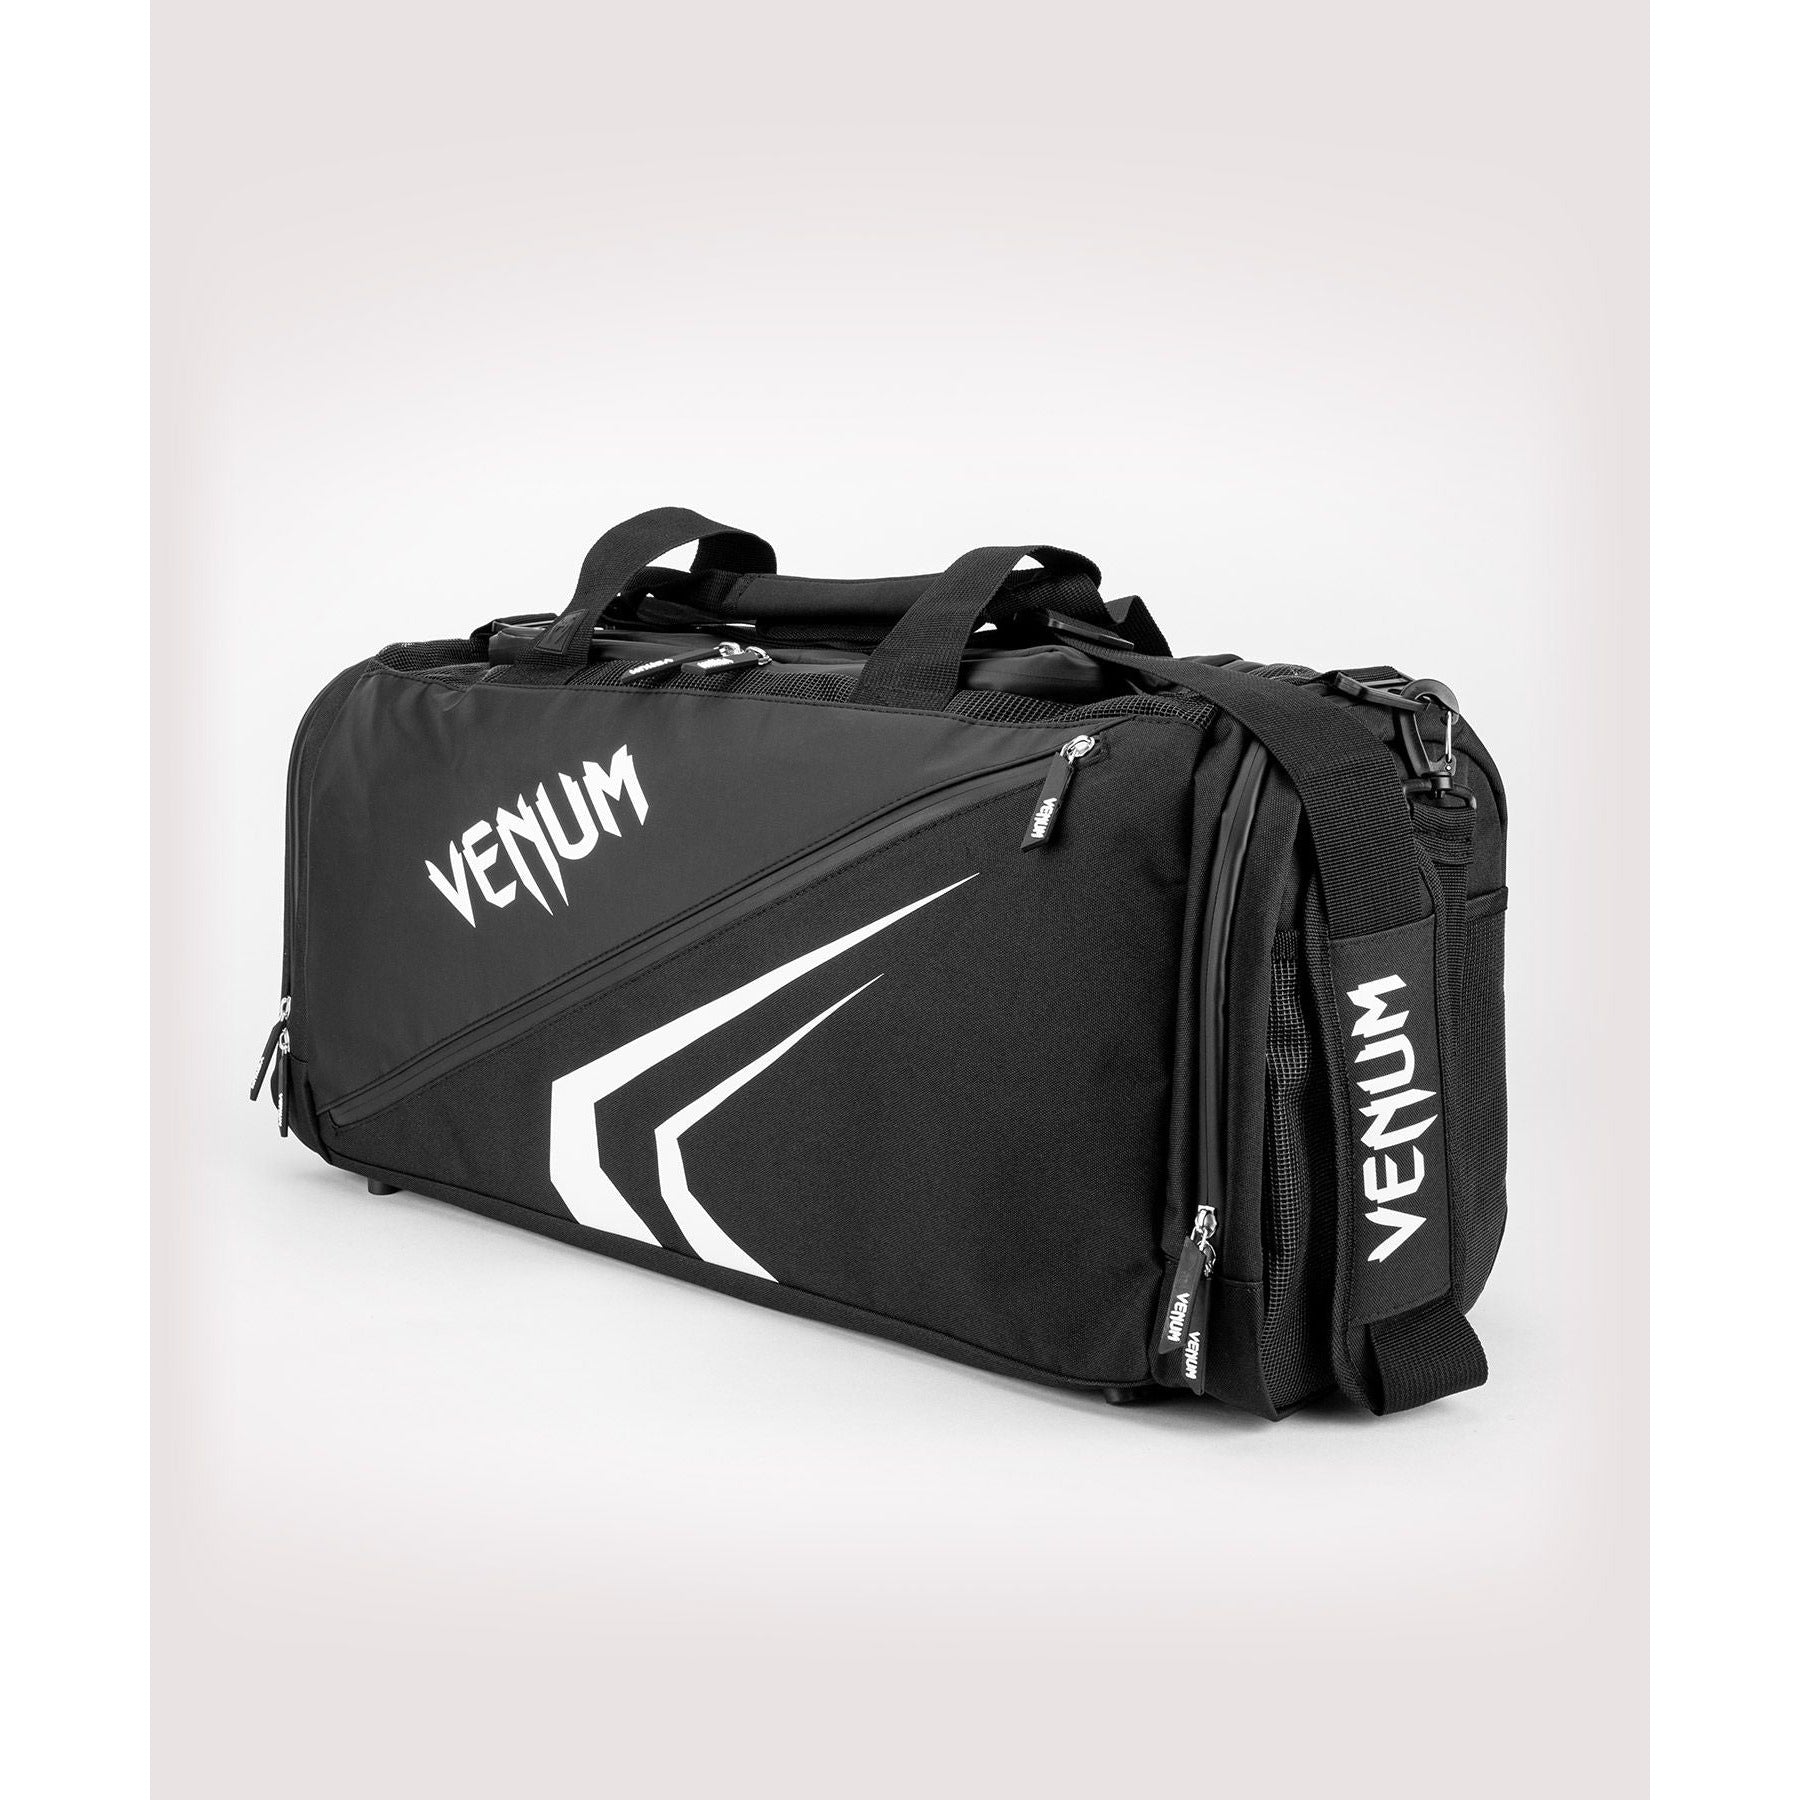 Venum Trainer Lite Evo Bag - Black/ White